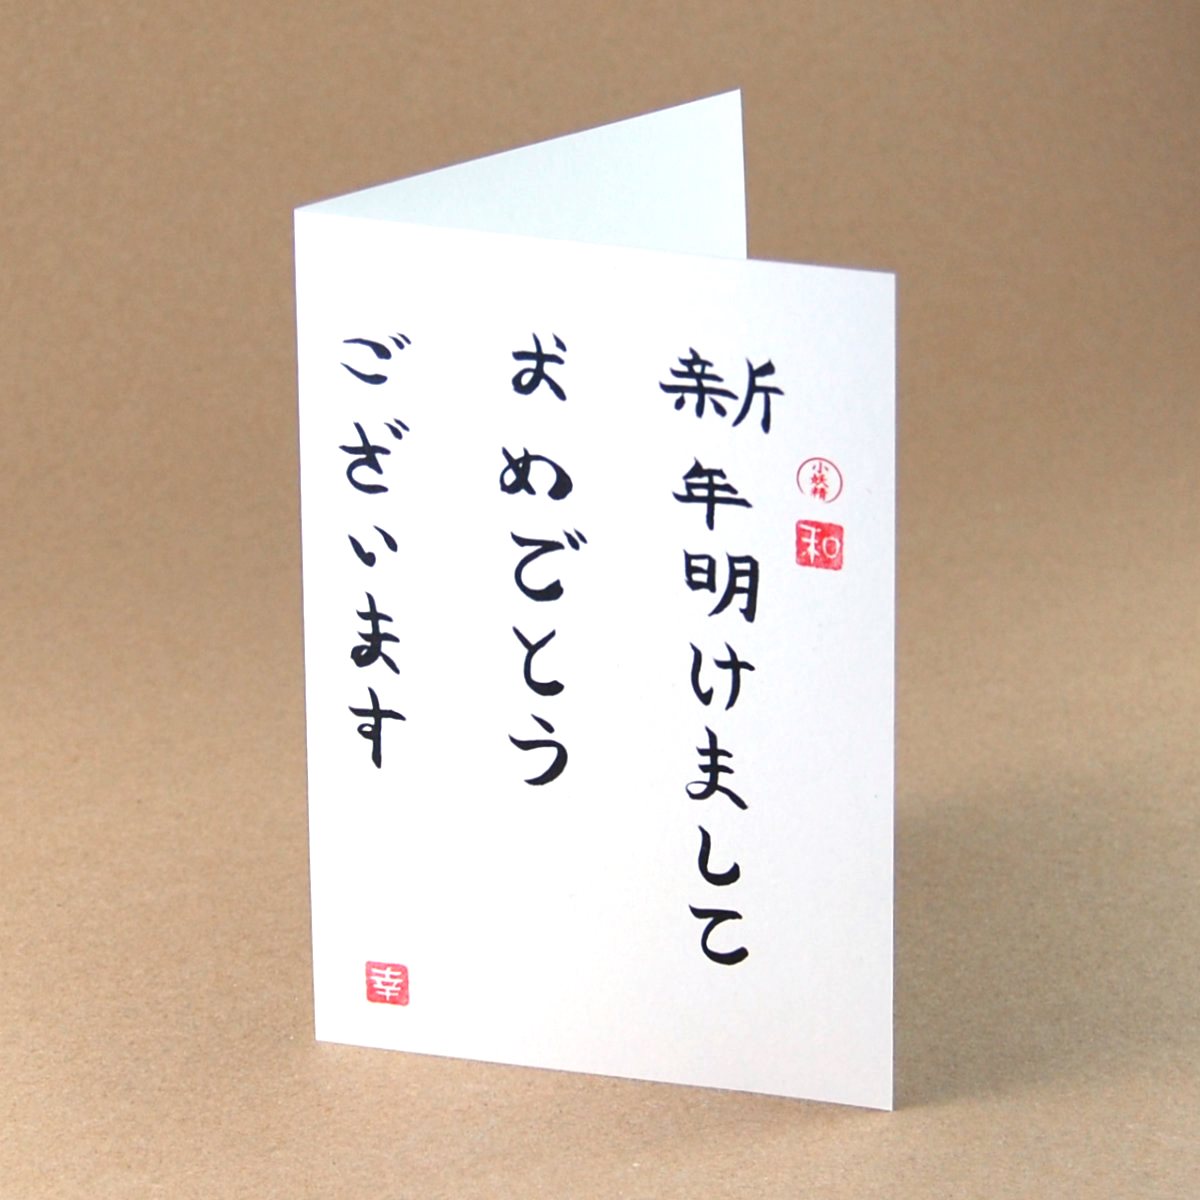 Shinnen akemashite omedetou gozaimasu, Neujahrskarten mit japanischen Schriftzeichen